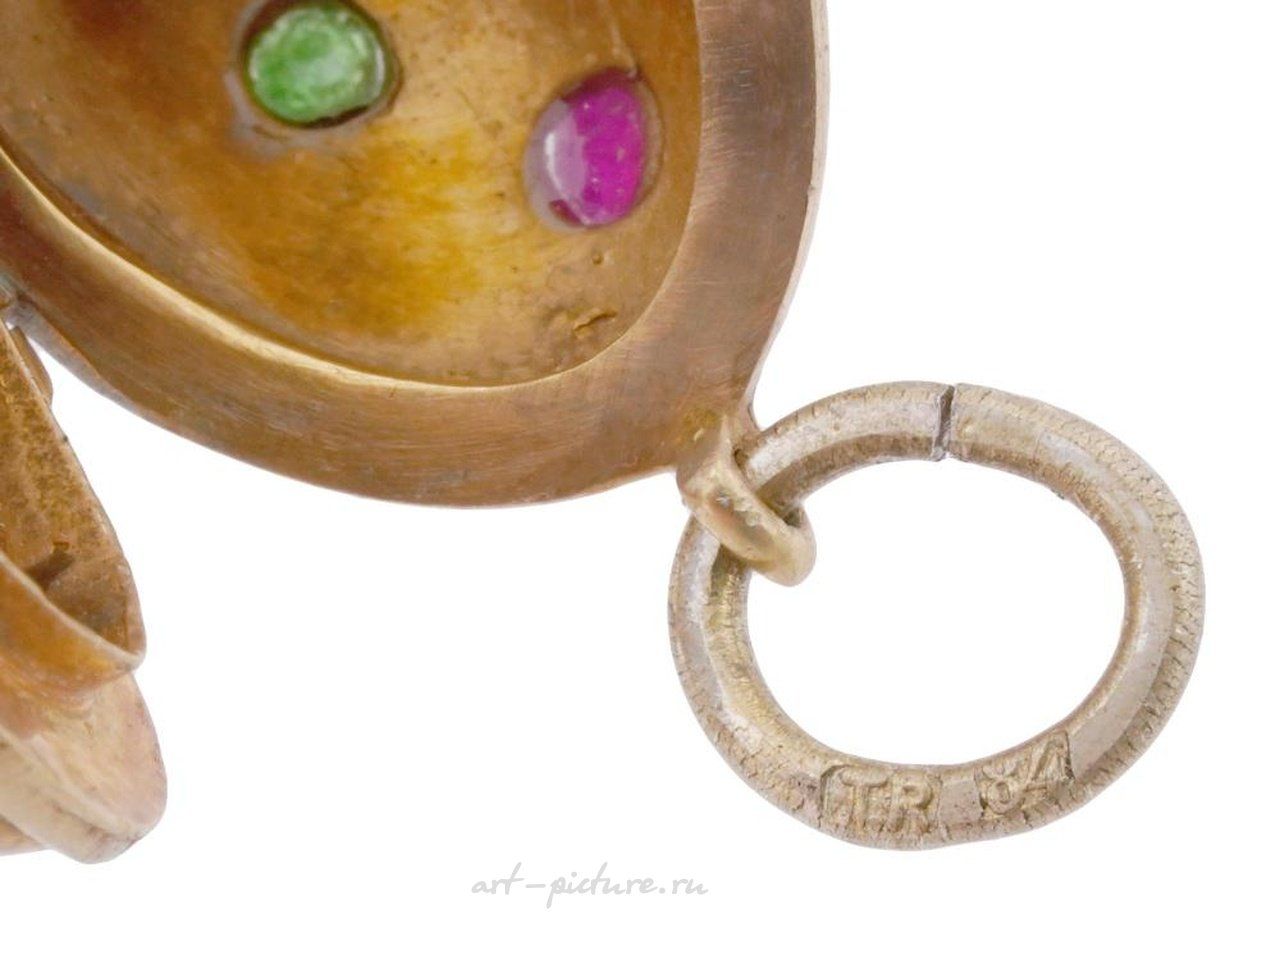 Русское серебро , Русская серебряная подвеска-медальон в форме яйца с позолотой и драгоценными камнями